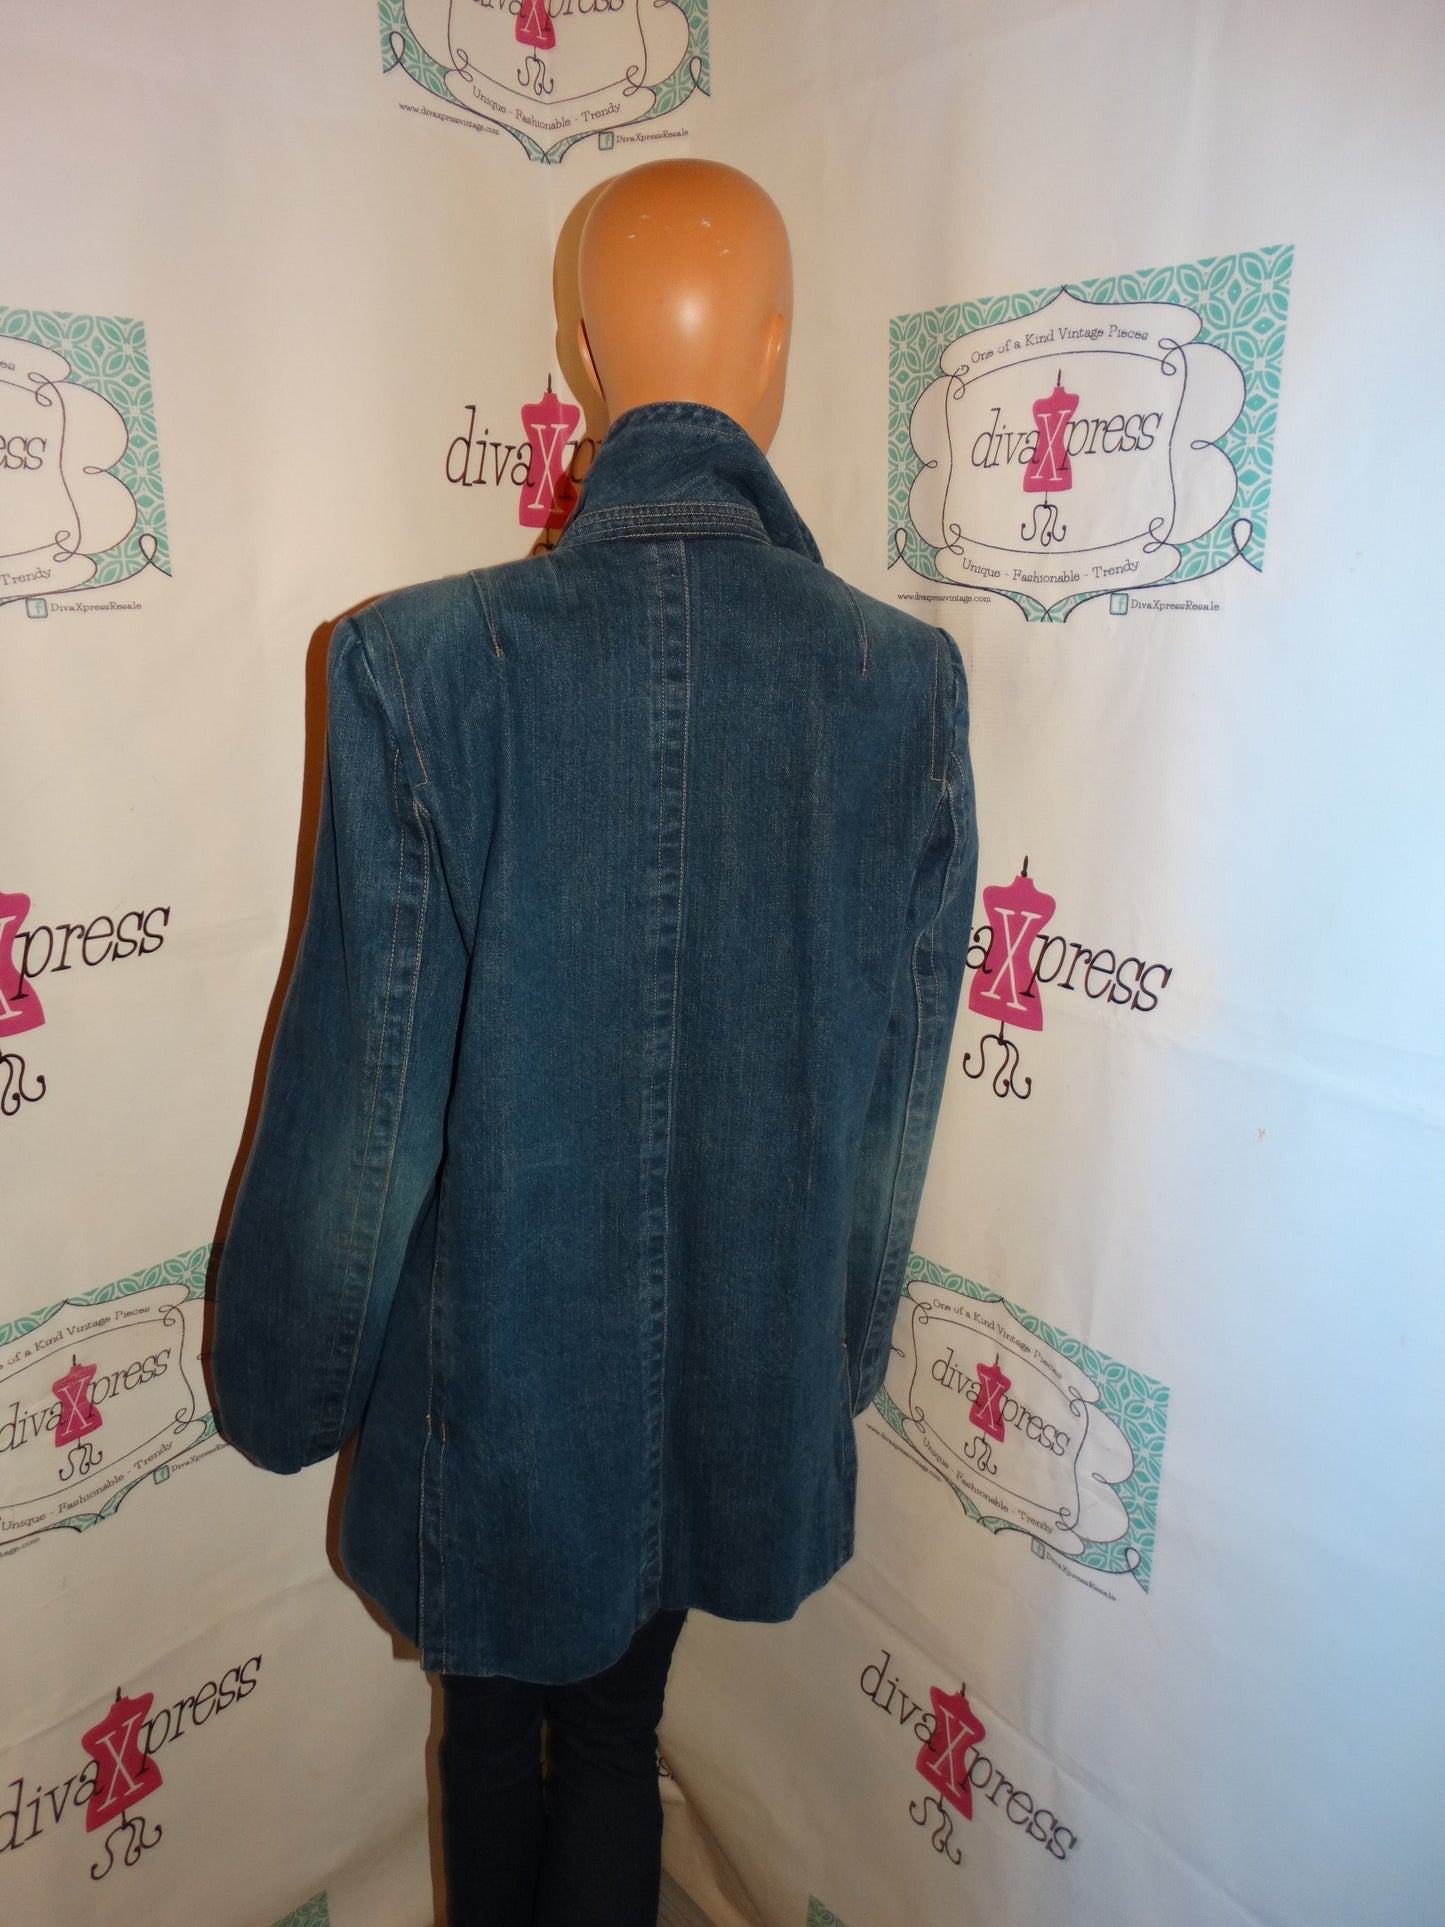 Vintage Will smnith Blue Jean Jacket Size XL